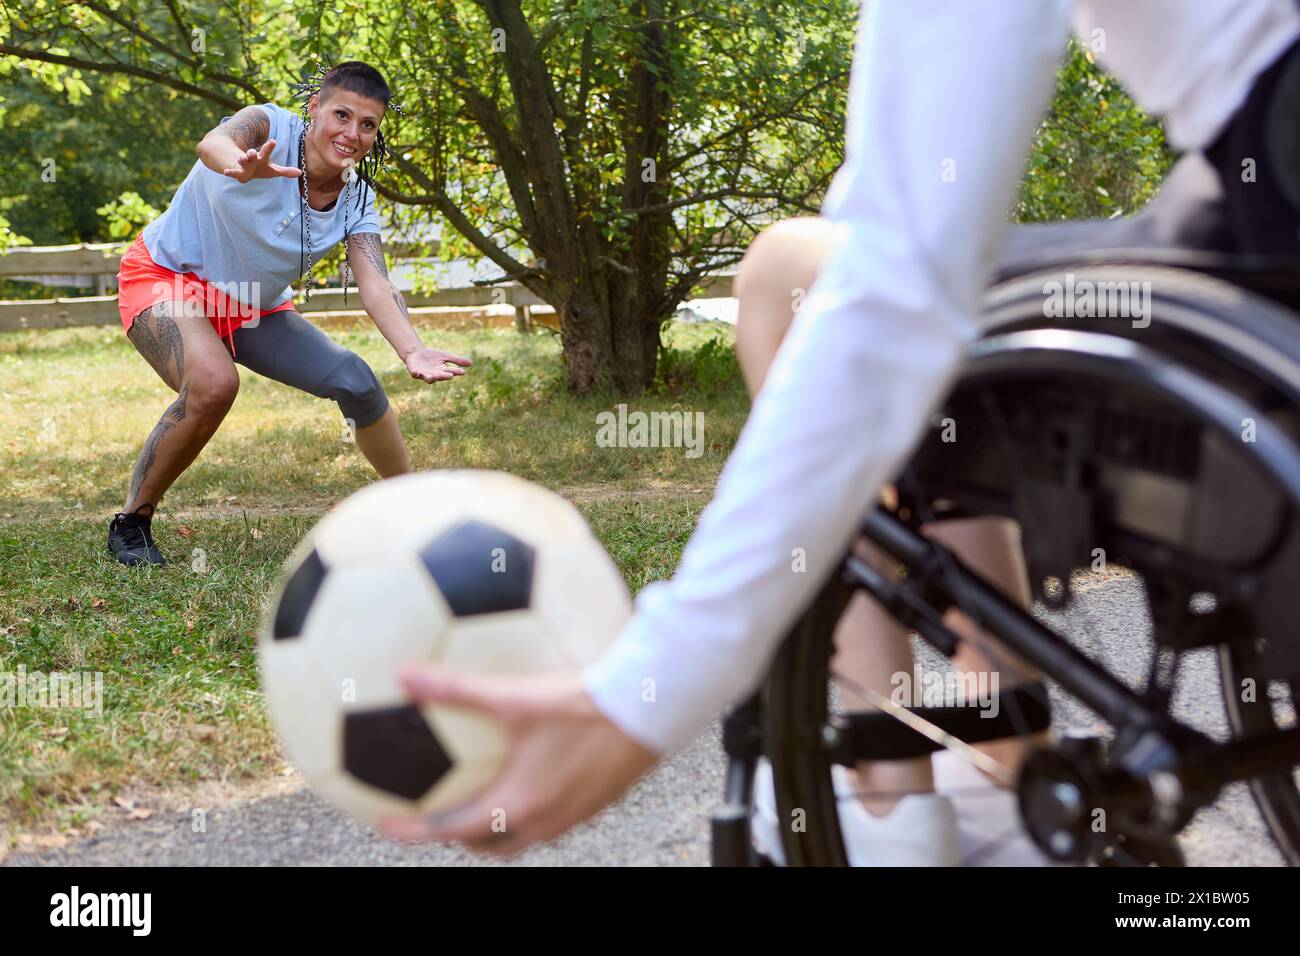 Una scena coinvolgente di una persona in sedia a rotelle e di amici che giocano a calcio all'aperto, mostrando gioia, inclusione e sport adattivi. Foto Stock